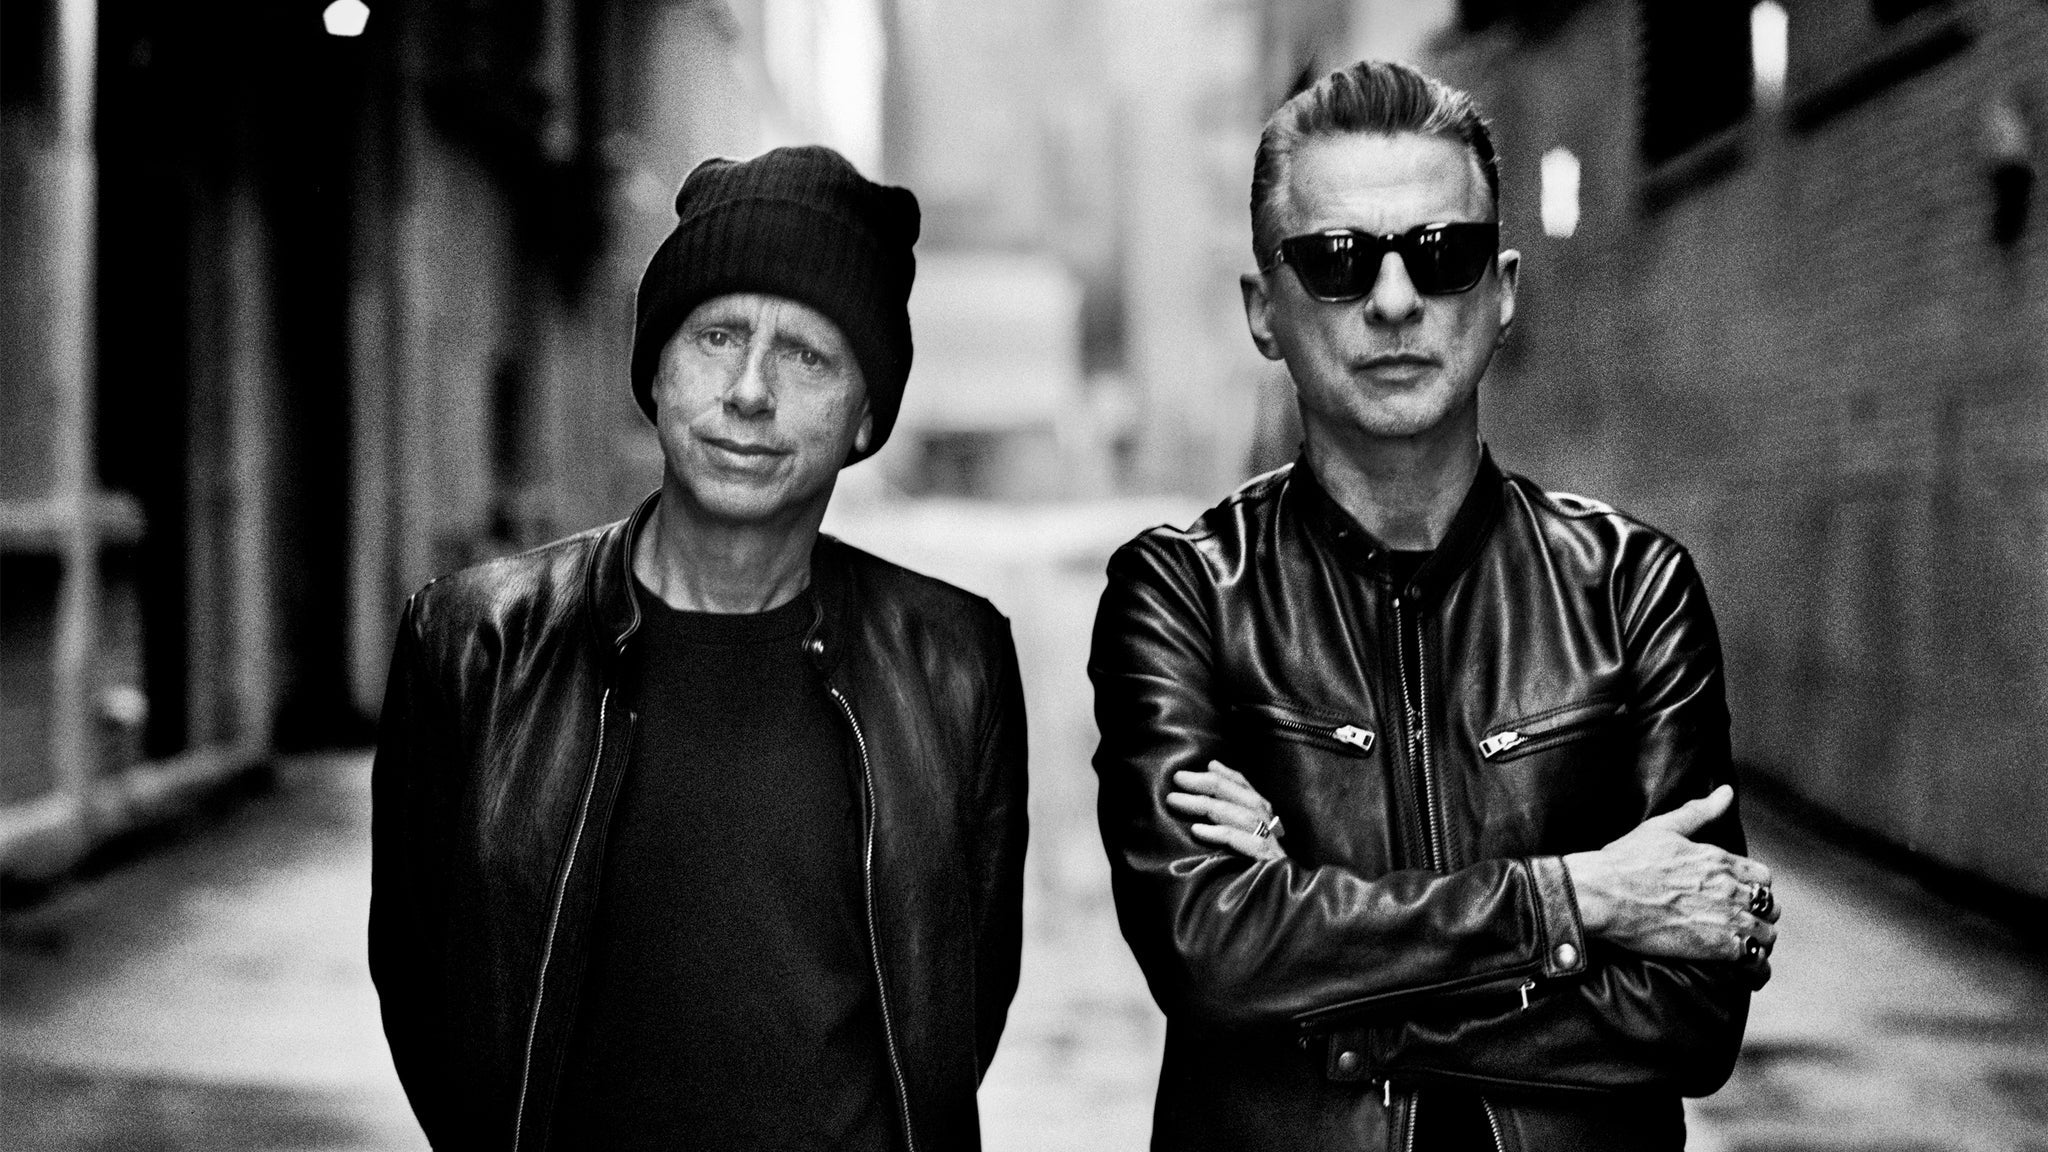 Depeche Mode in Dublin promo photo for MCD presale offer code